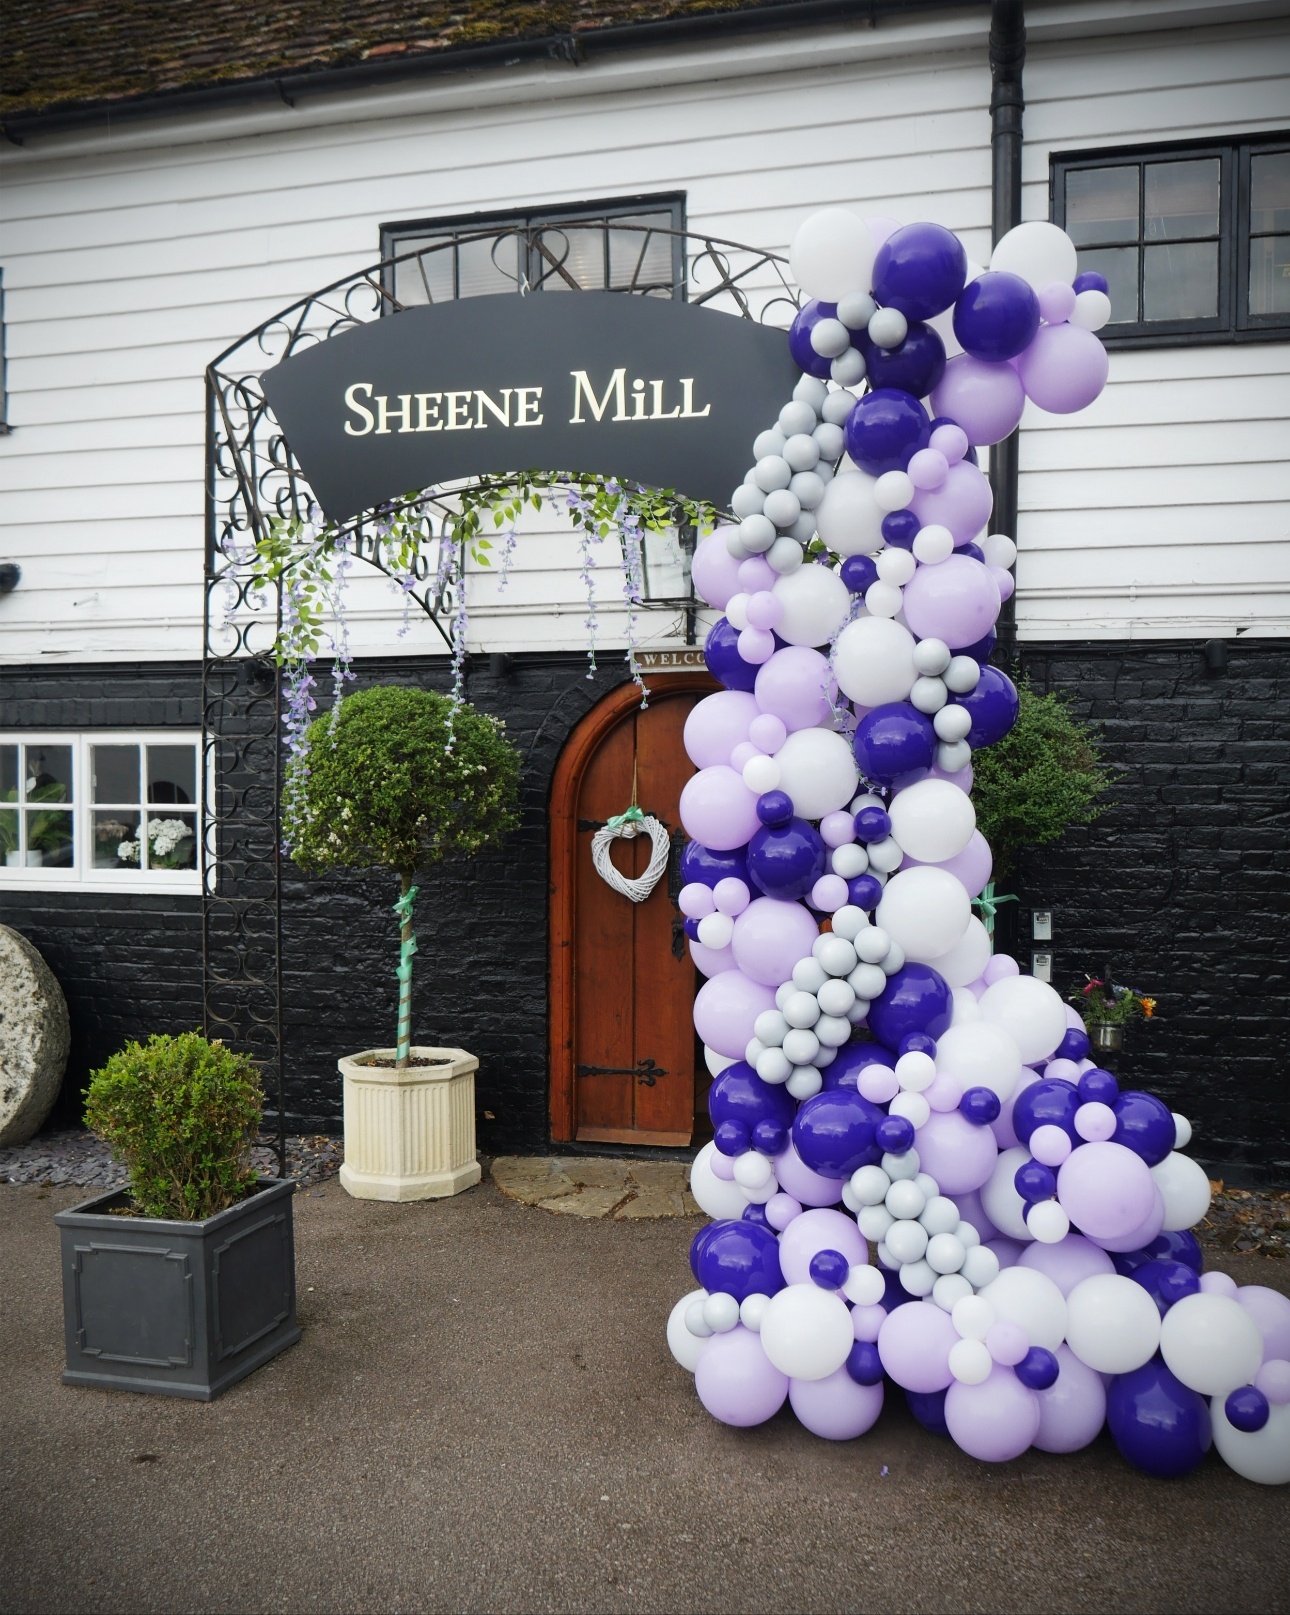 Sheene Mill